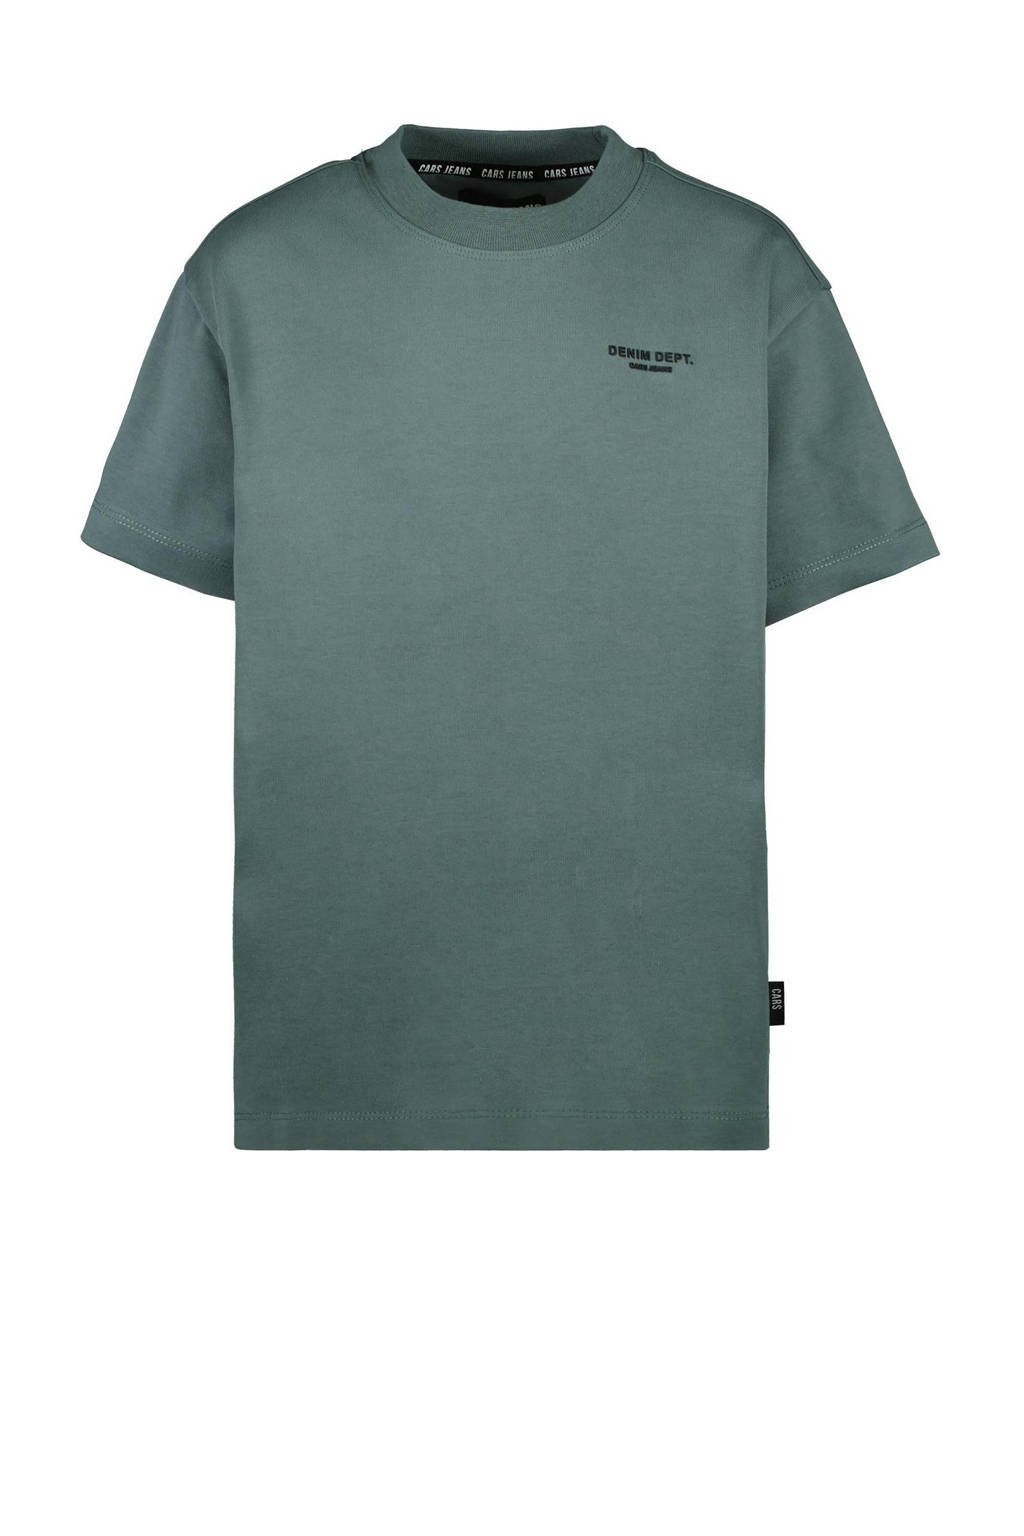 T-shirt AFORTY grijsgroen